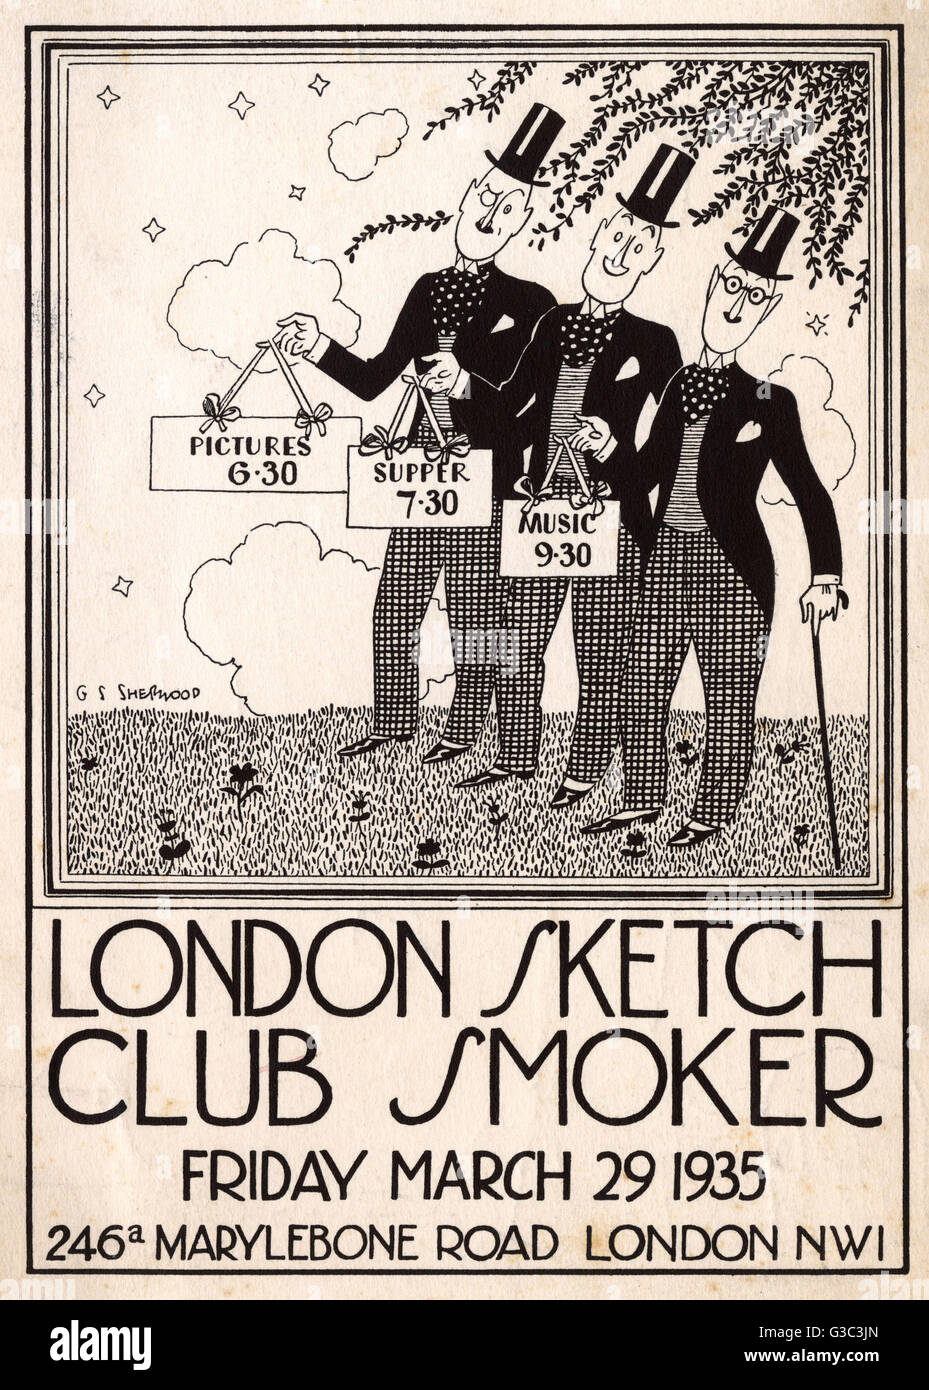 Broschüre Werbung London Skizze Club Raucher (Rauchen Partei), am Freitag, 29. März 1935 an einem Veranstaltungsort in Marylebone Road, London NW1, mit Bildern von 6.30 Uhr, Abendessen ab 7.30 Uhr und Musik von 9.30 Uhr stattfindet.      Datum: 1935 Stockfoto